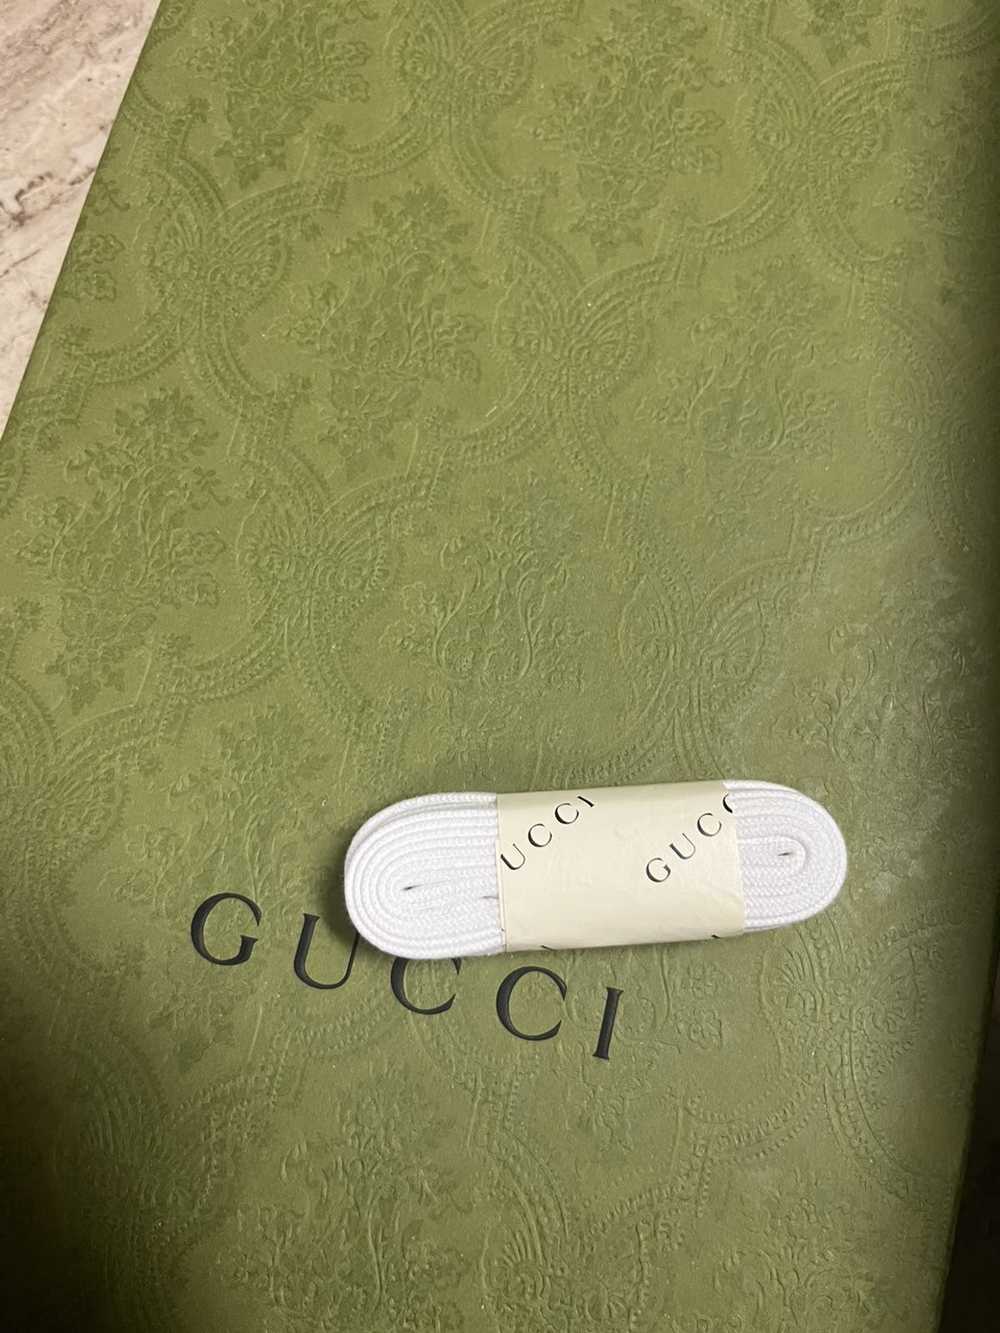 Gucci Gucci bananya shoes - image 4